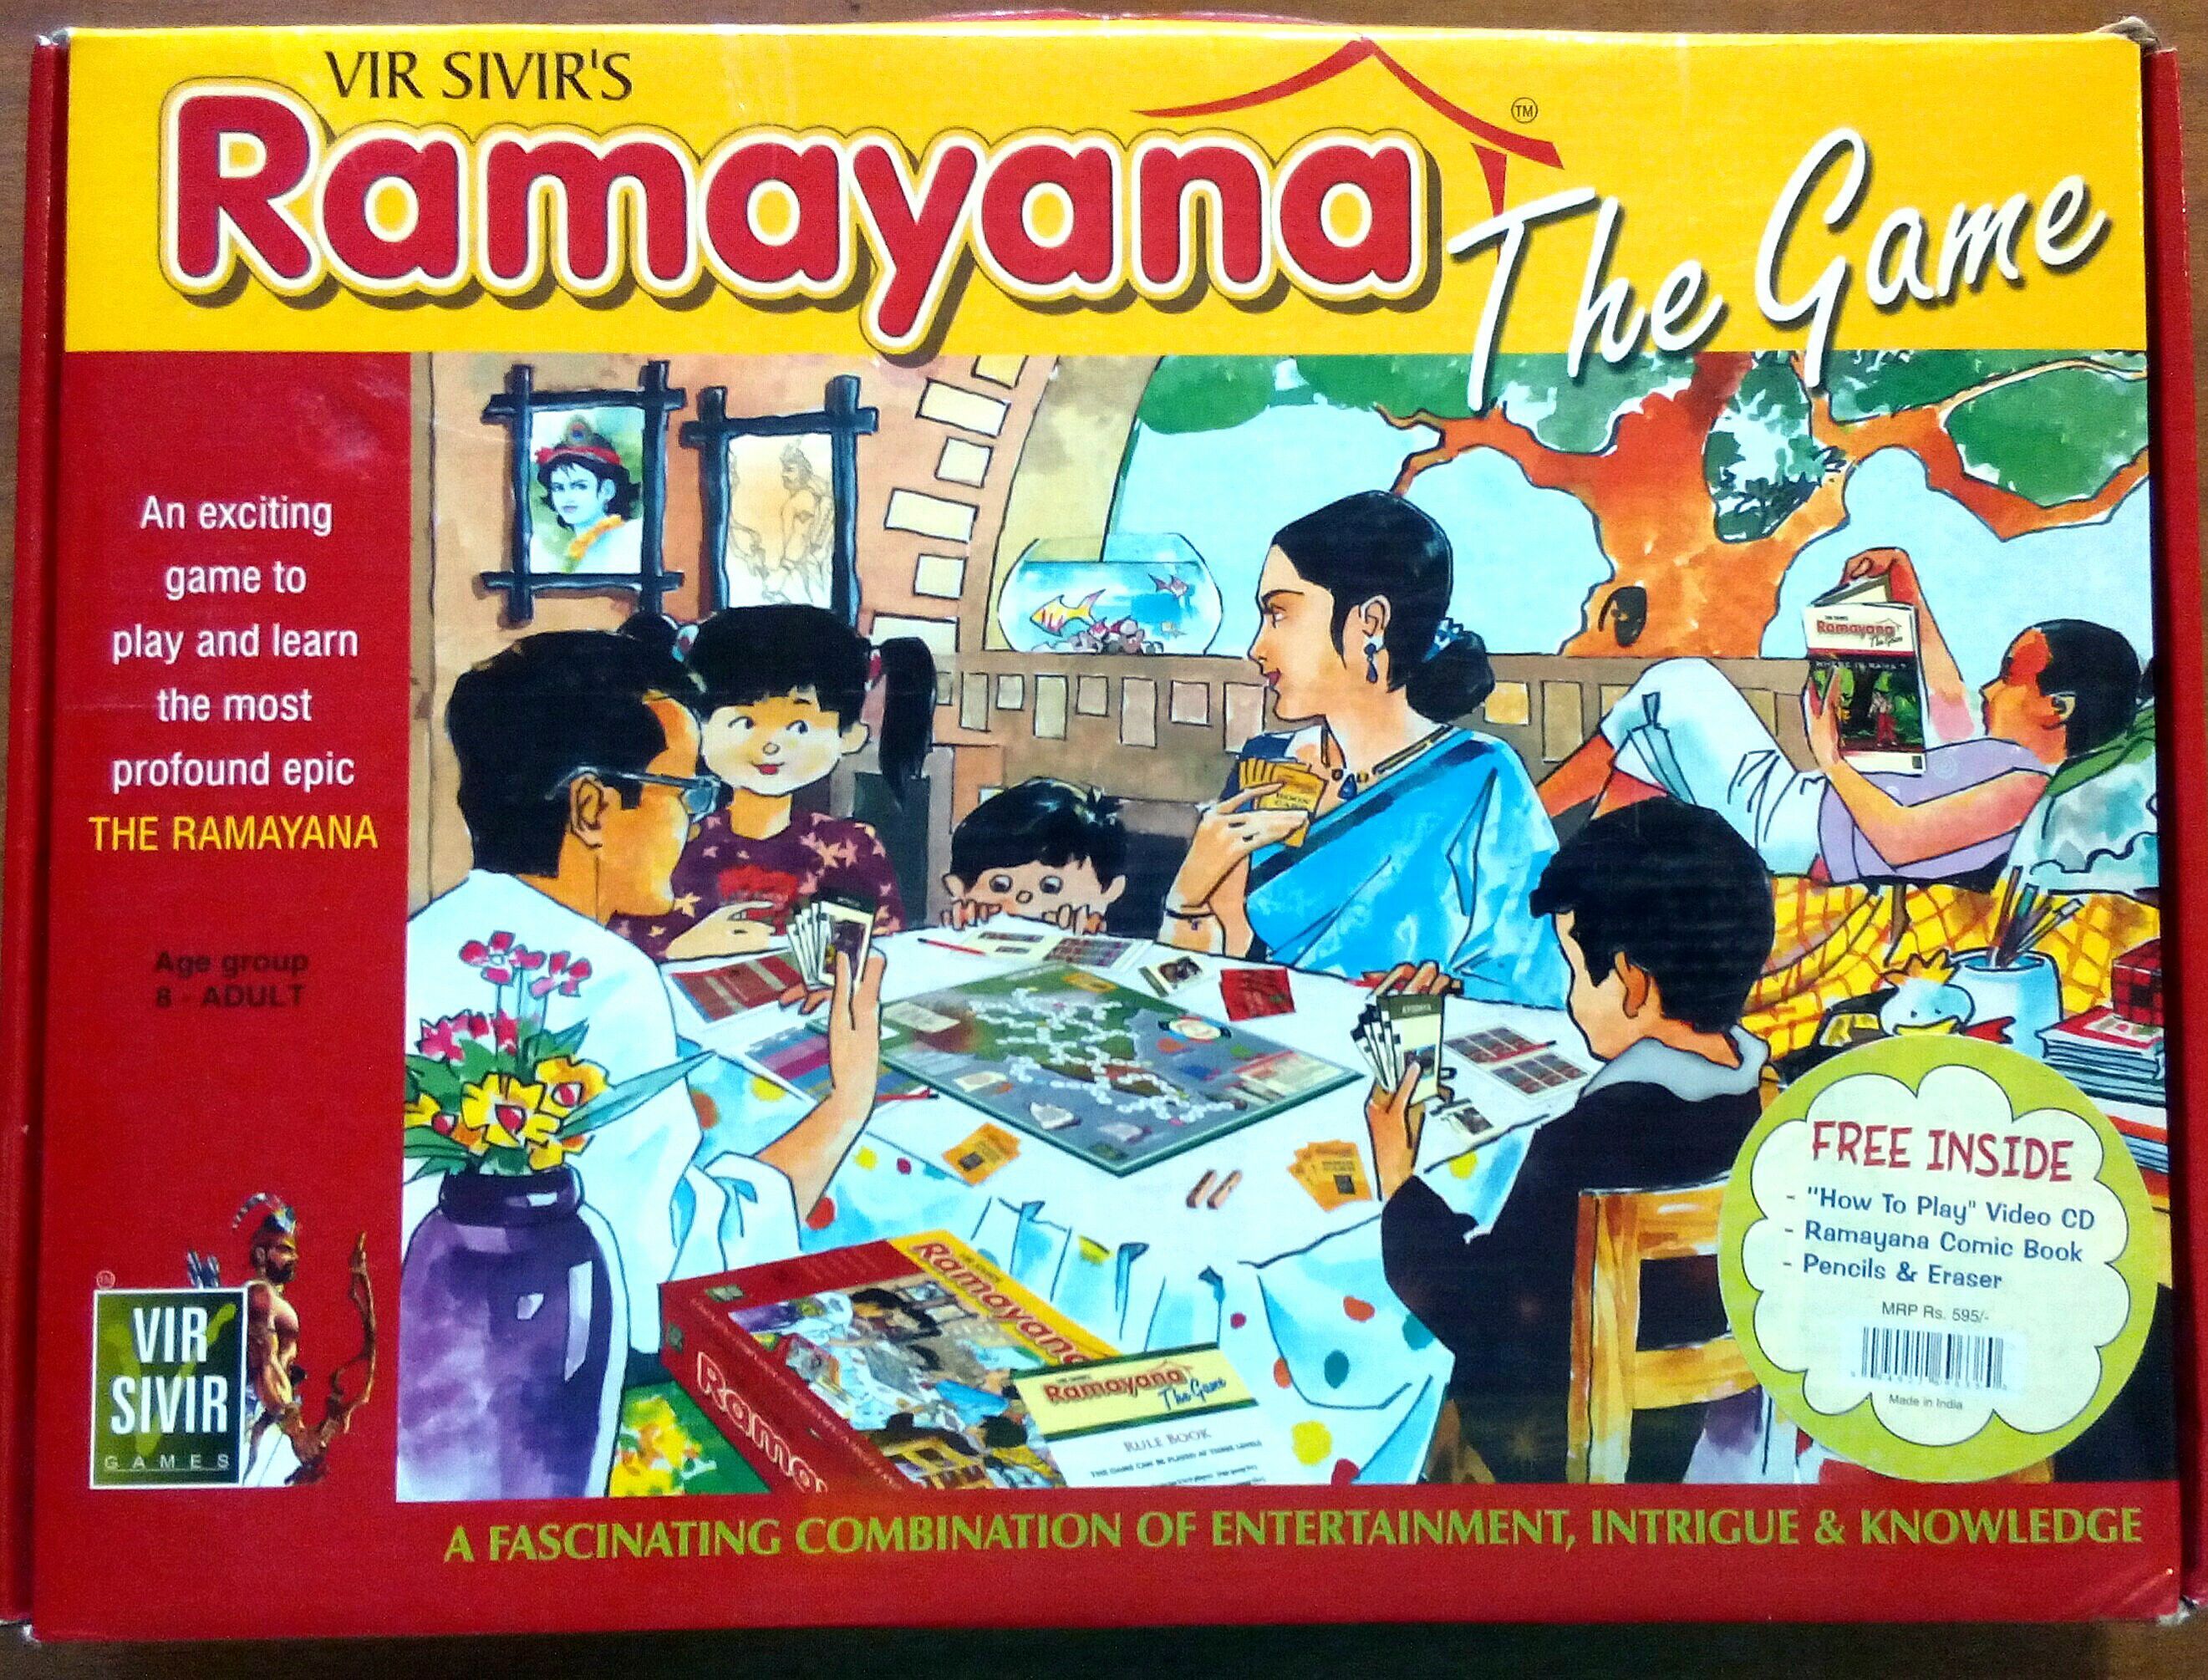 Vir Sivir's Ramayana: The Game